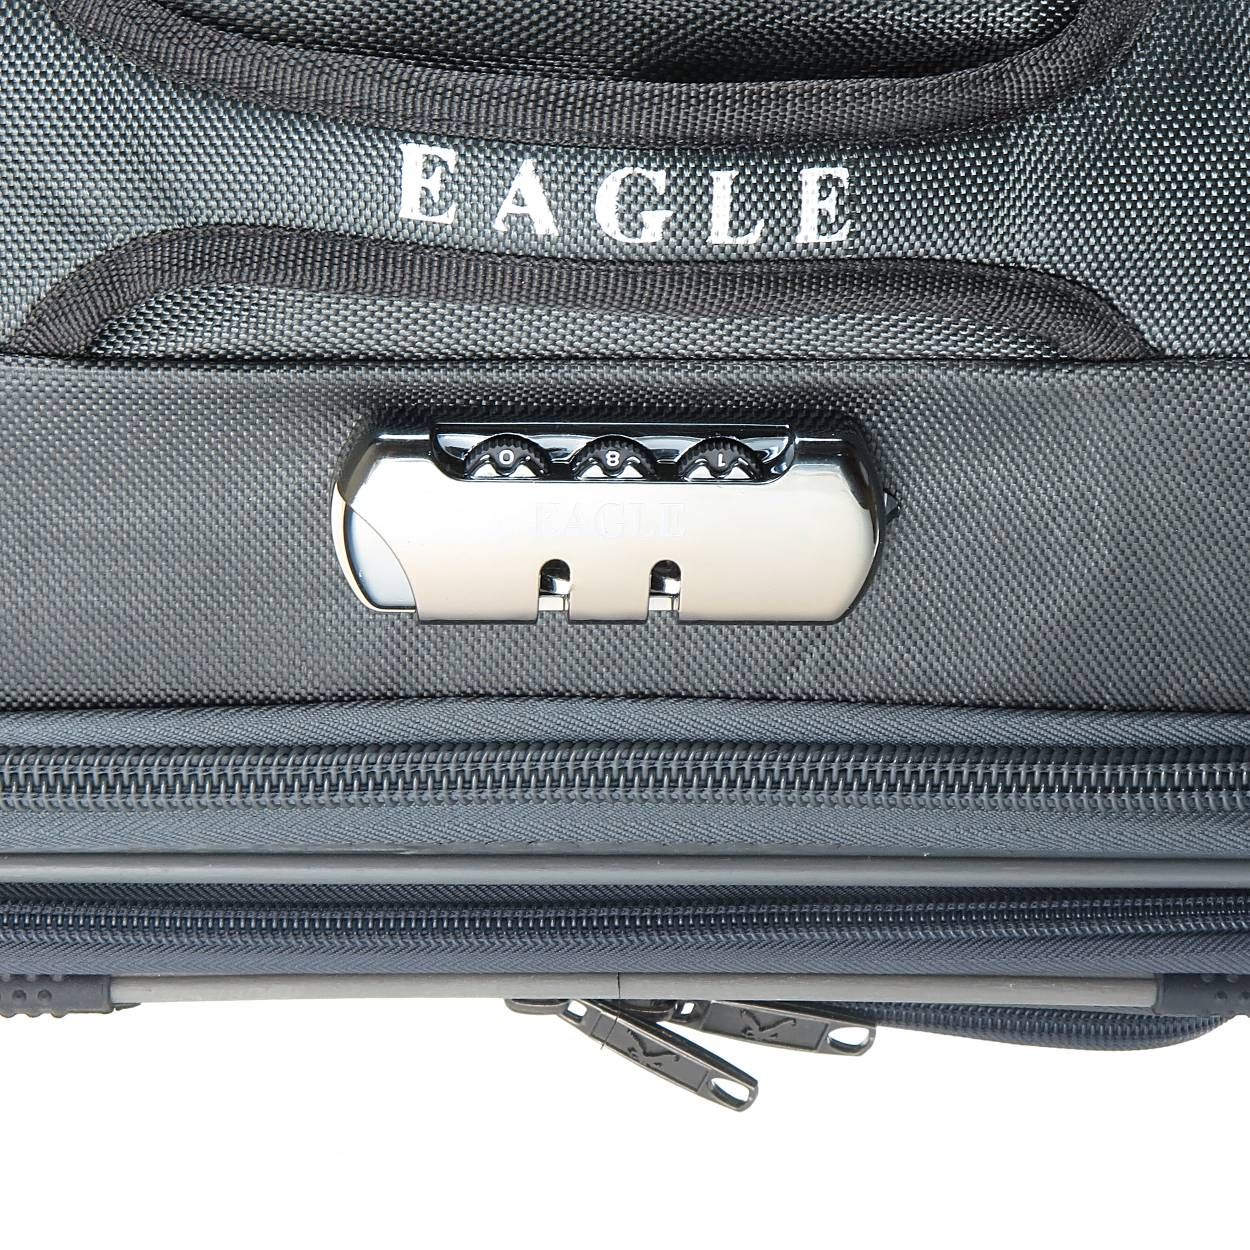 چمدان ایگل مدل Mb سایز کوچک -  - 9